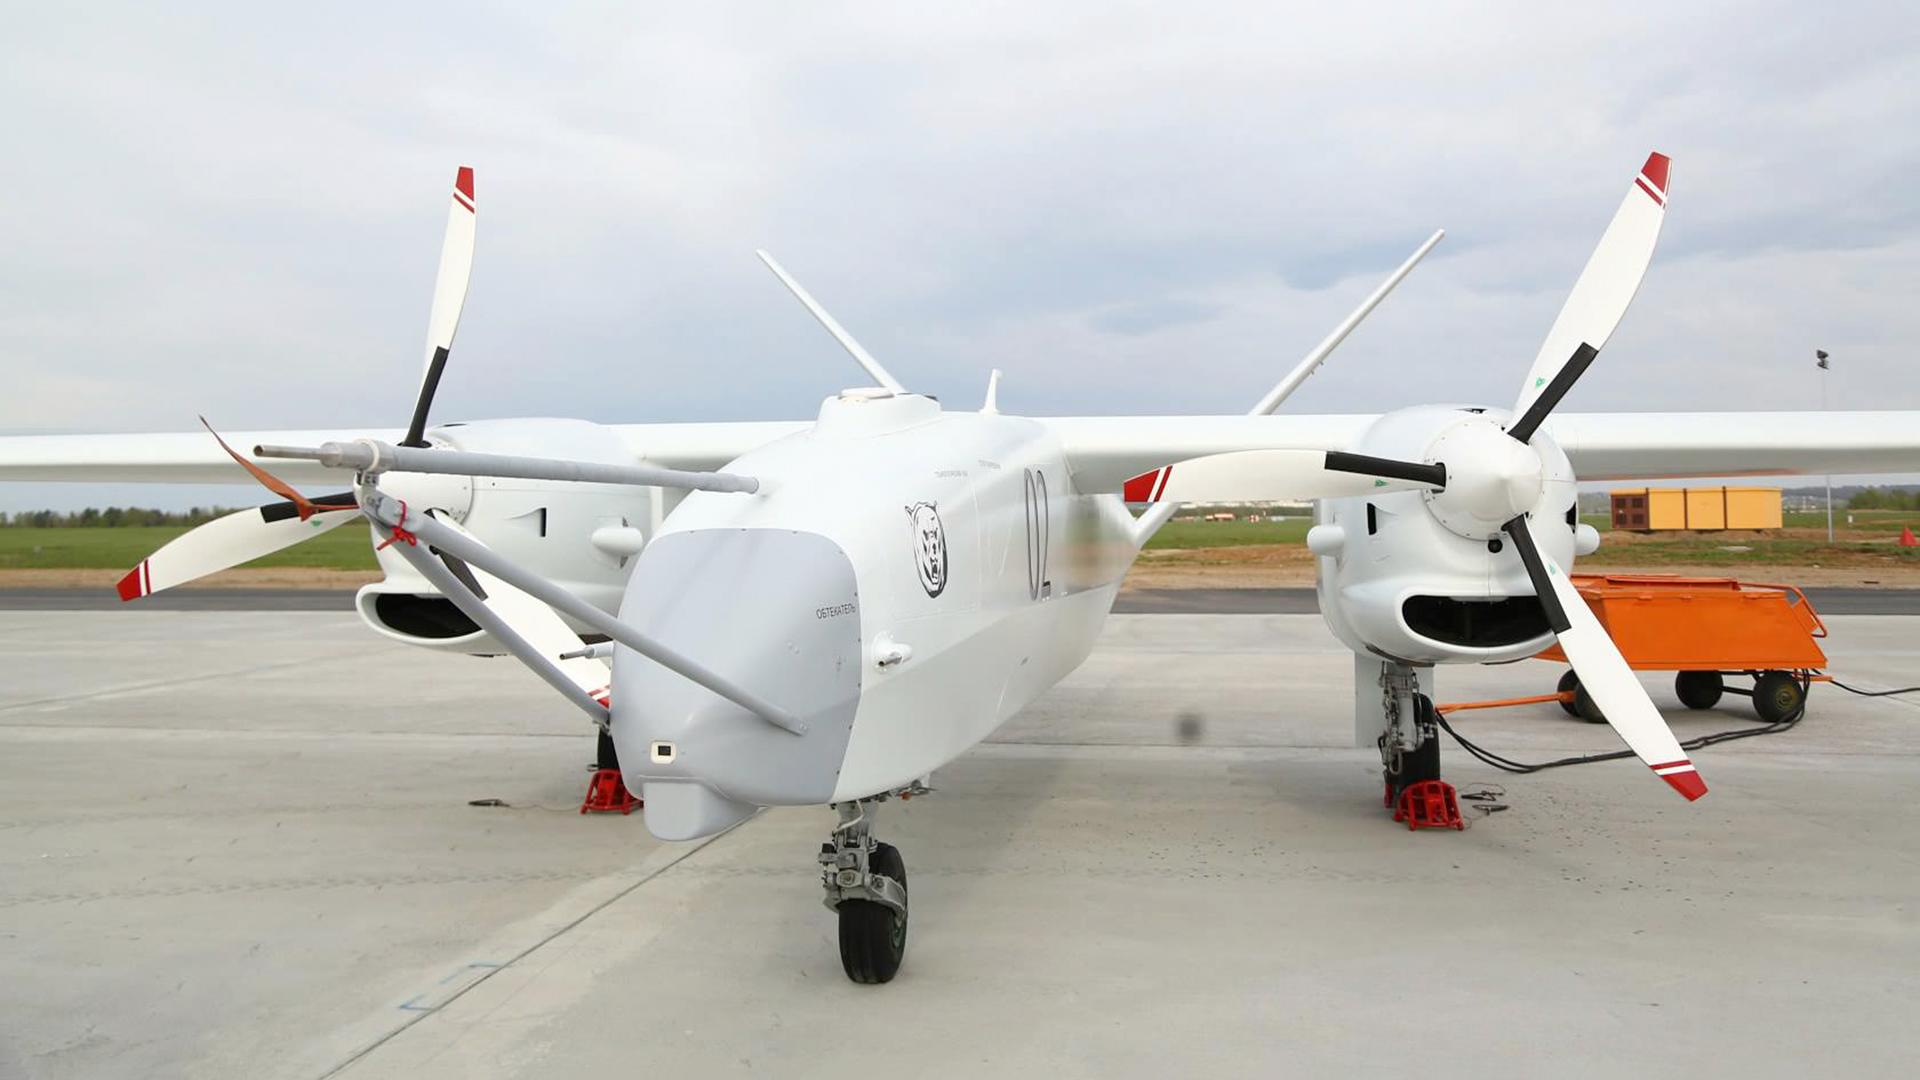 Rosja nie była w stanie stworzyć drona Altius od 11 lat, który powinien przewyższyć Bayraktar TB2 i MQ-Reaper - ale ukradli 17 milionów dolarów